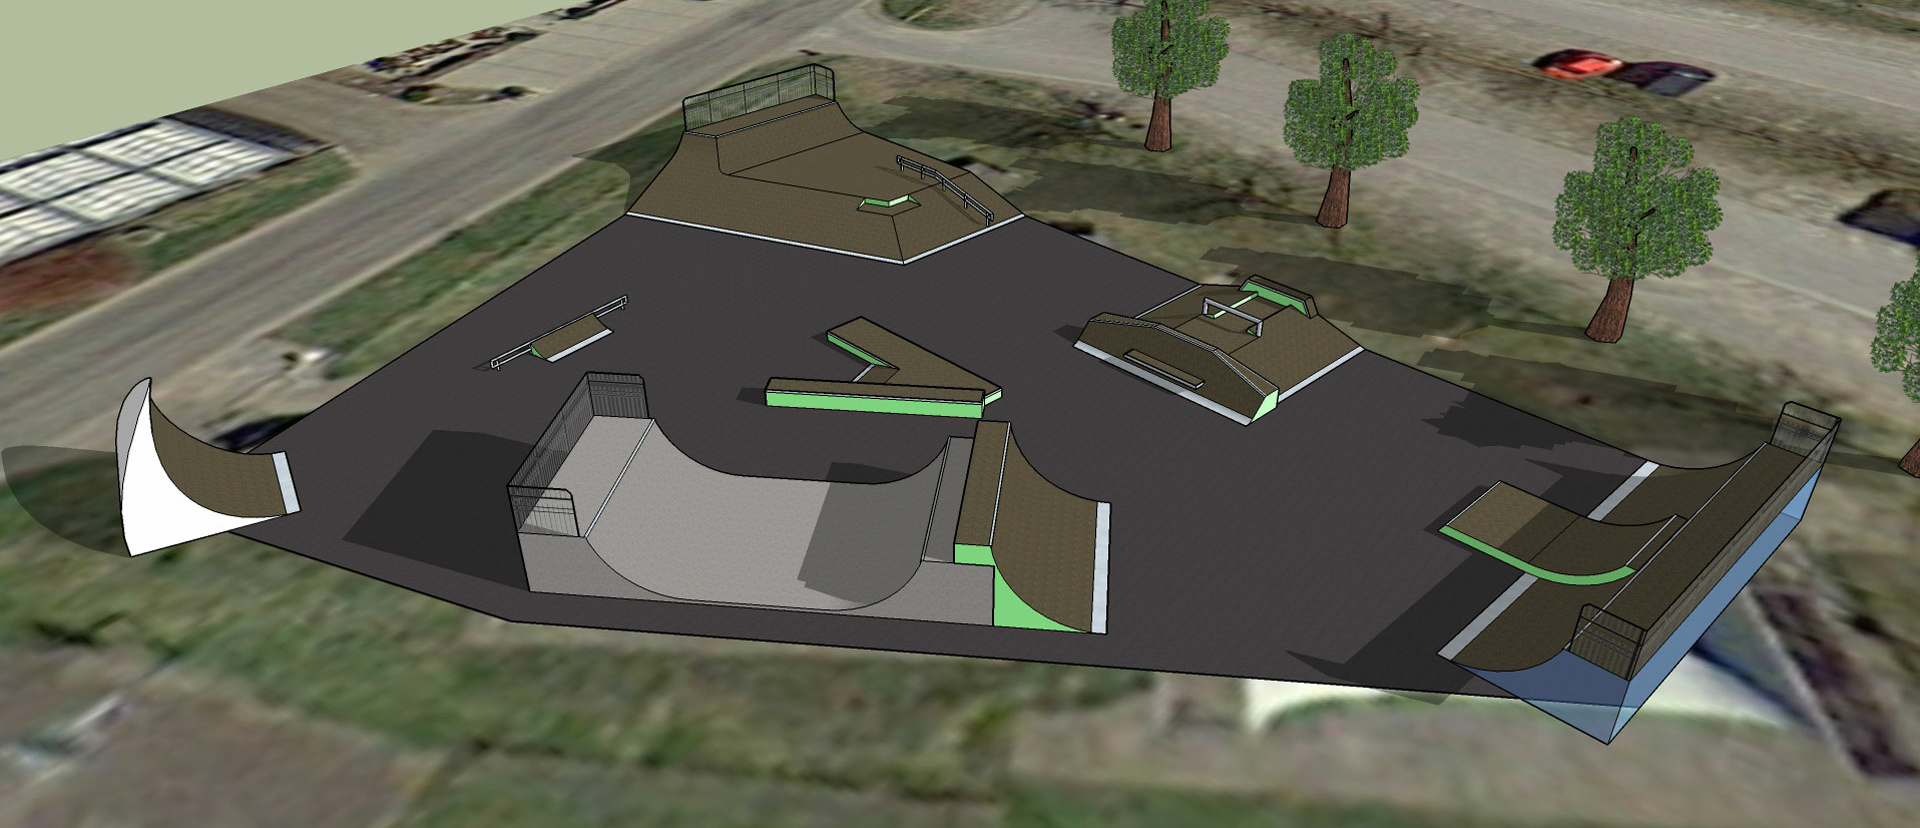 Skatepark Langenargen 3D Overview